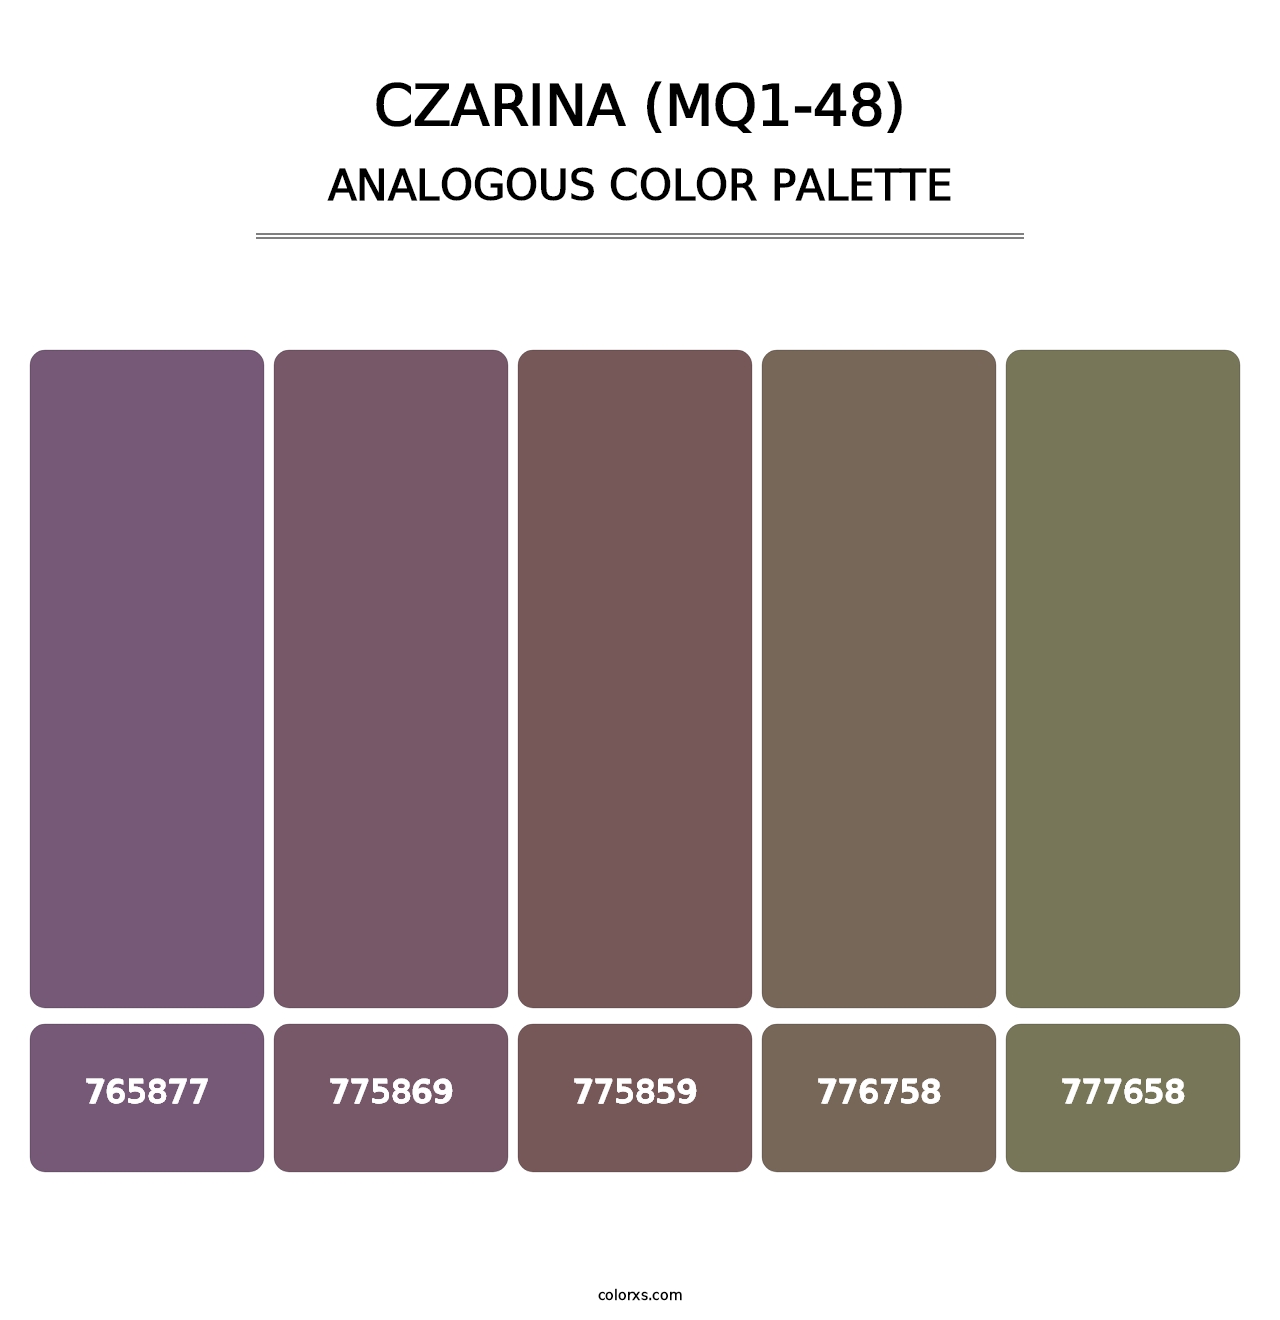 Czarina (MQ1-48) - Analogous Color Palette